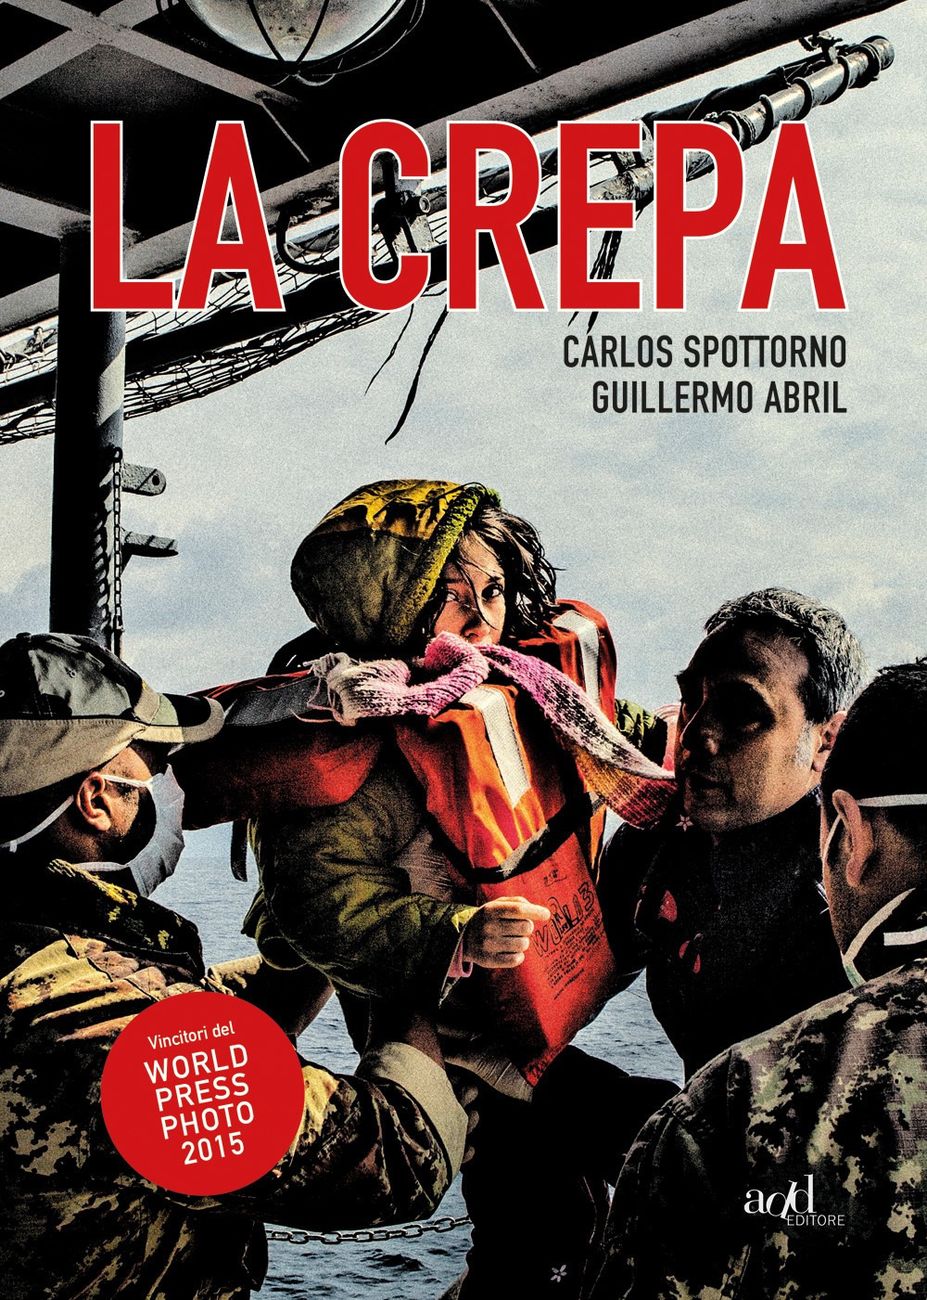 Carlos Spottorno & Guillermo Abril – La Crepa (ADD Editore, Torino 2017)